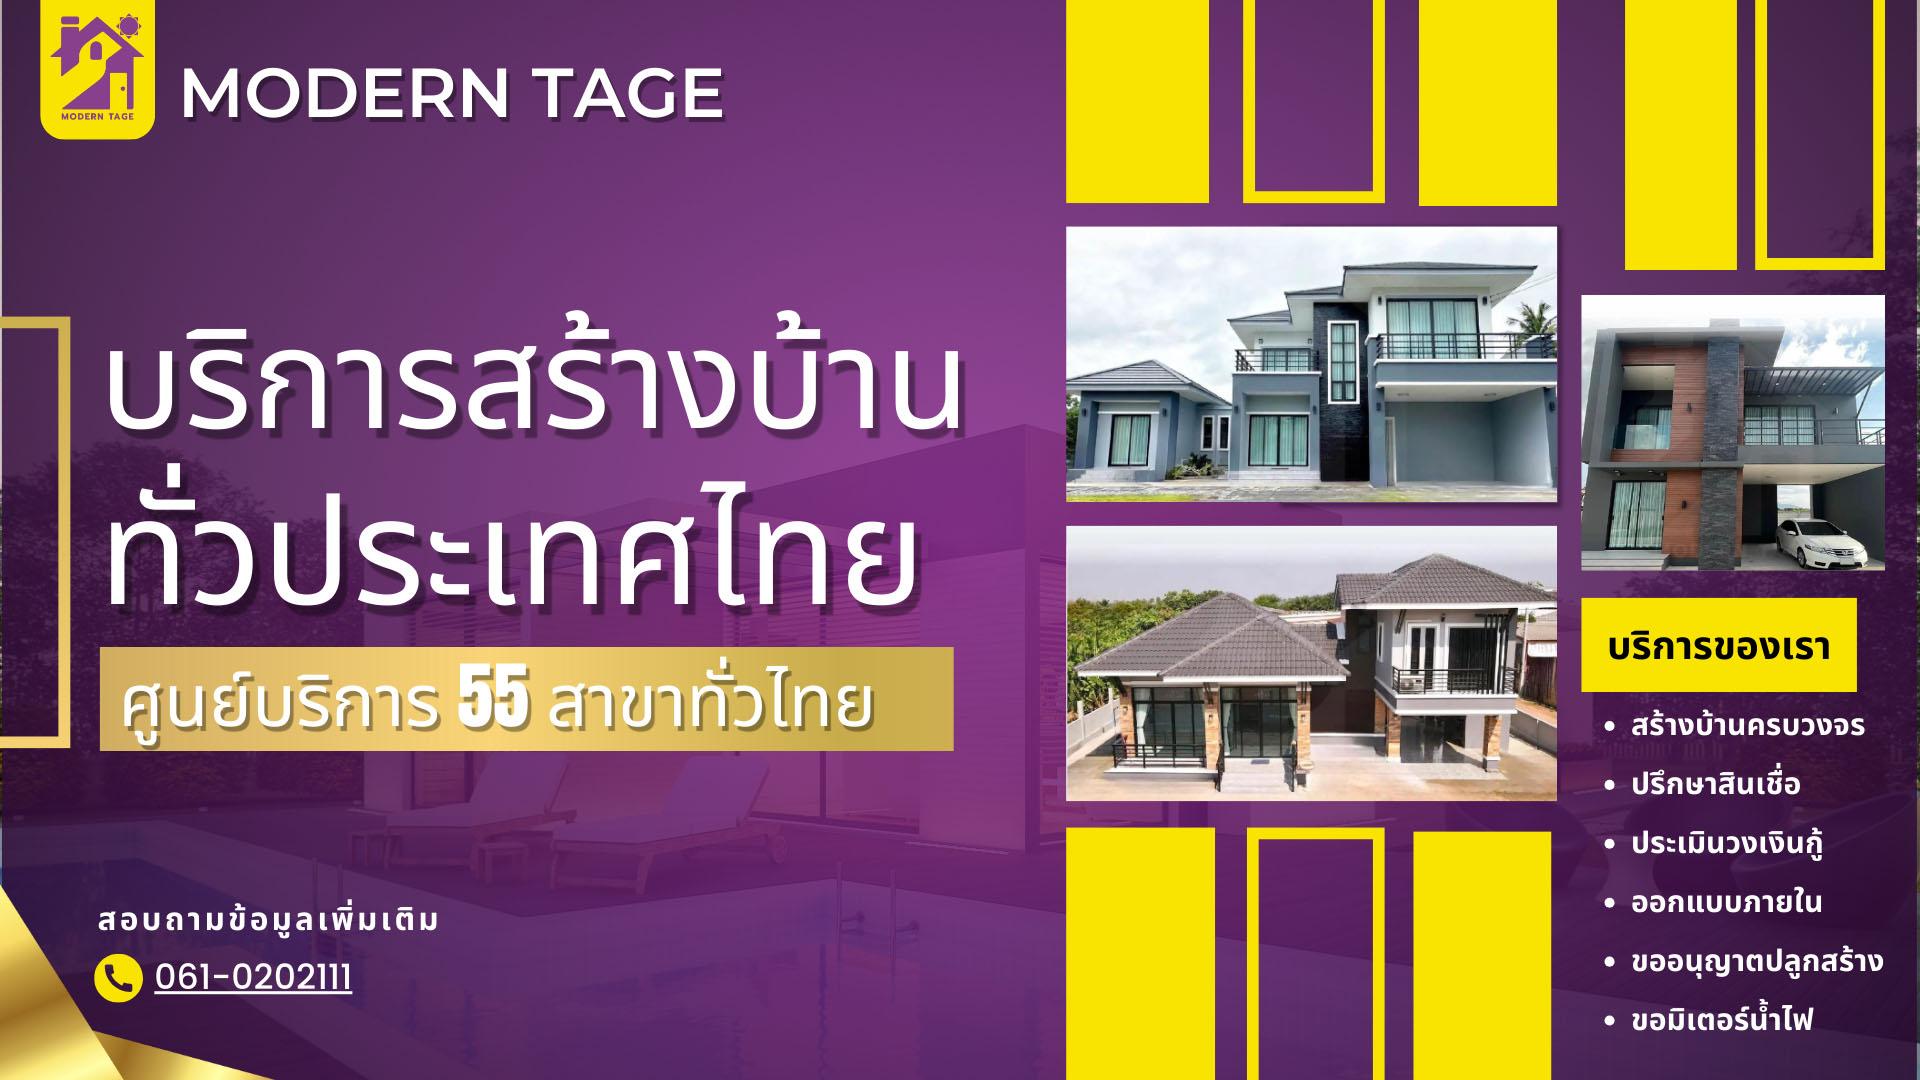 สร้างบ้านในฝันกับ โมเดิร์น เทจ: บริษัทรับสร้างบ้านชั้นนำของประเทศไทย